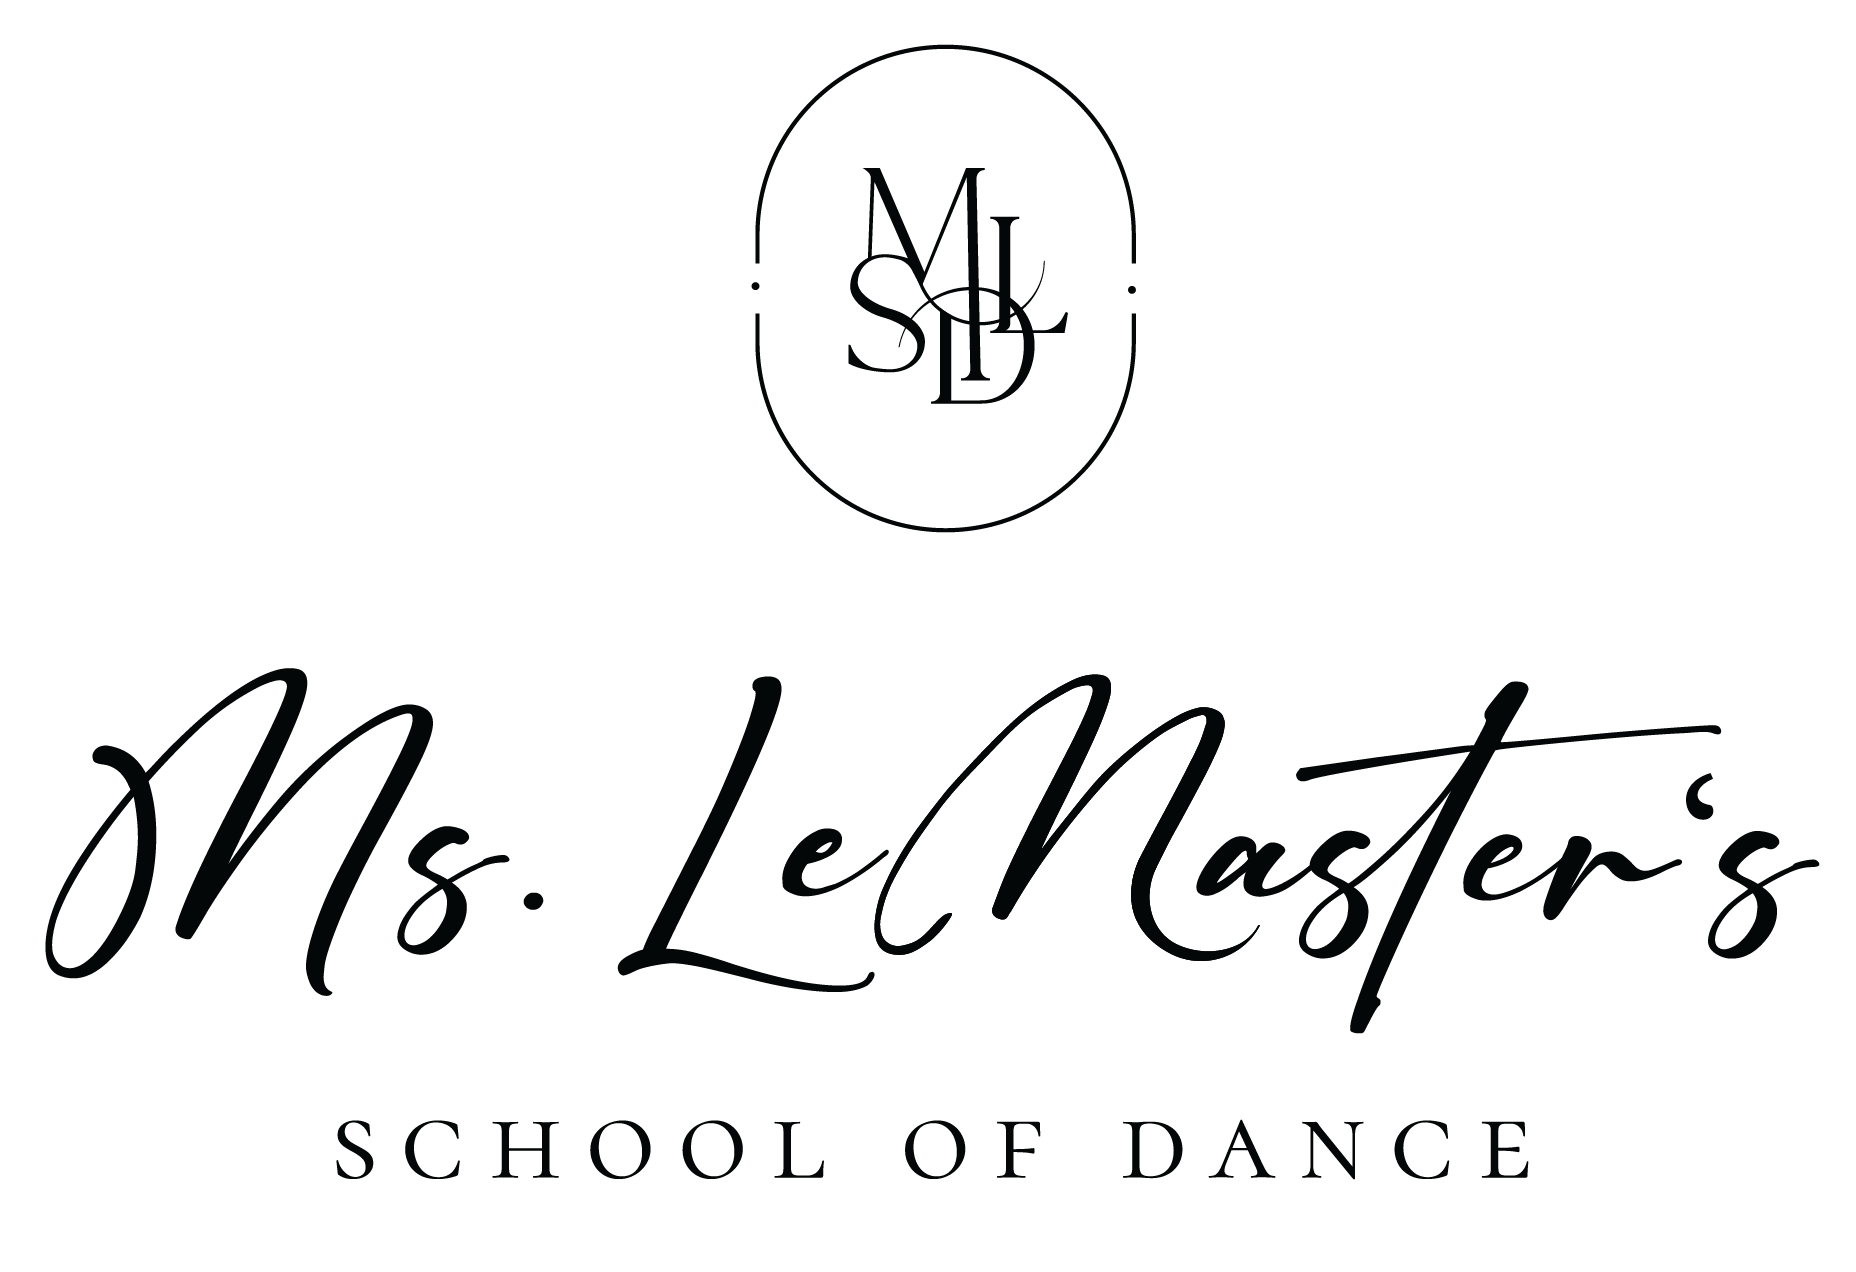 Miss LeMaster's School of Dance